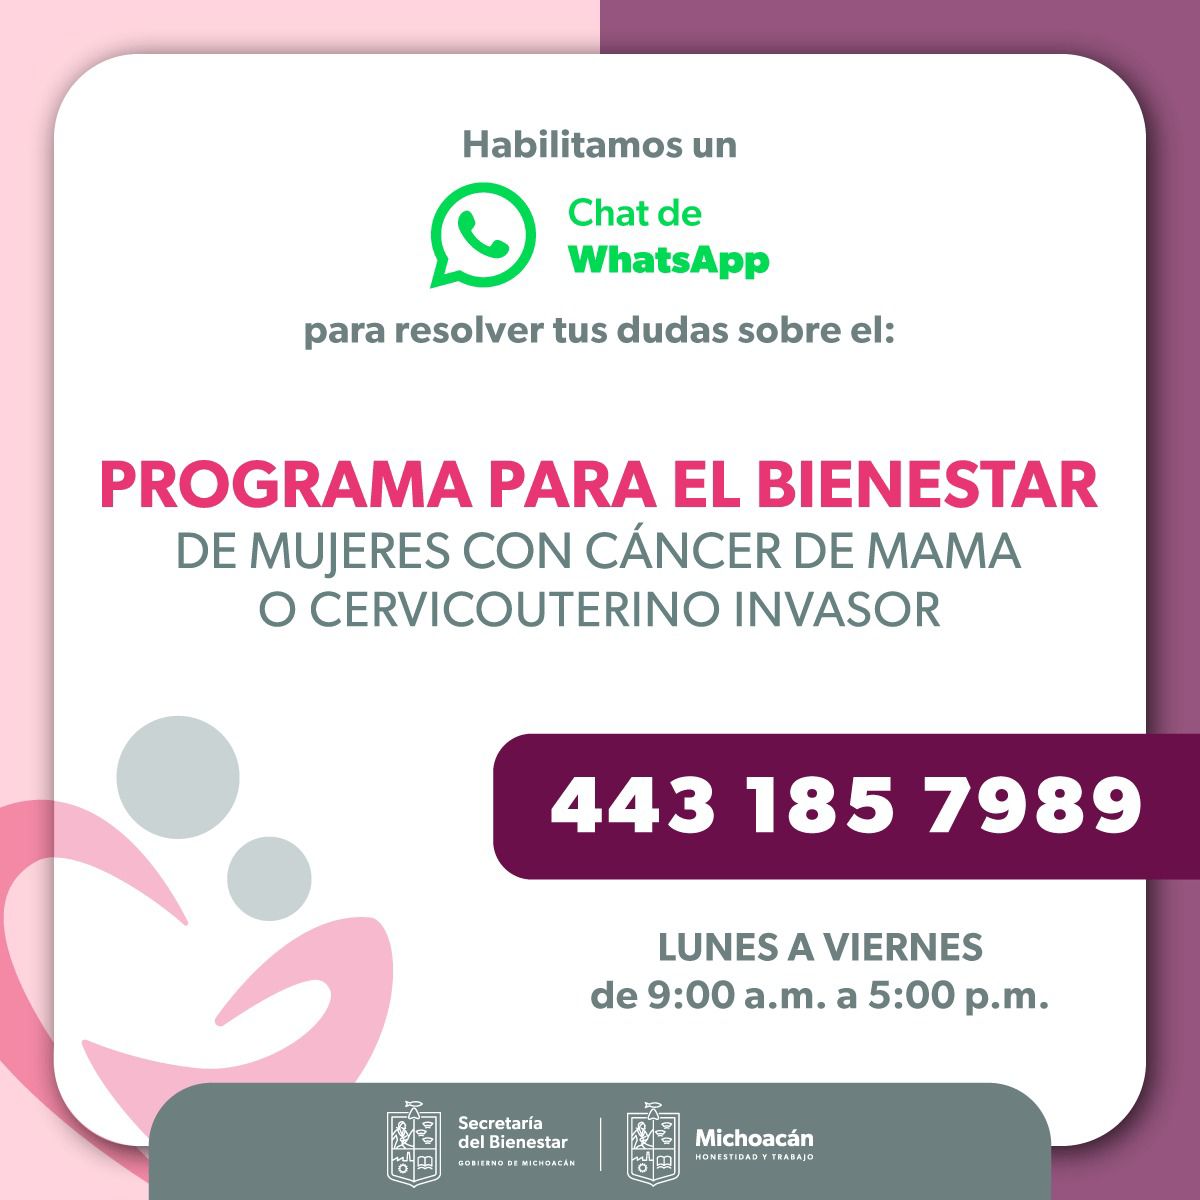 Ofrece Bienestar información por WhatsApp del programa mujeres con cáncer